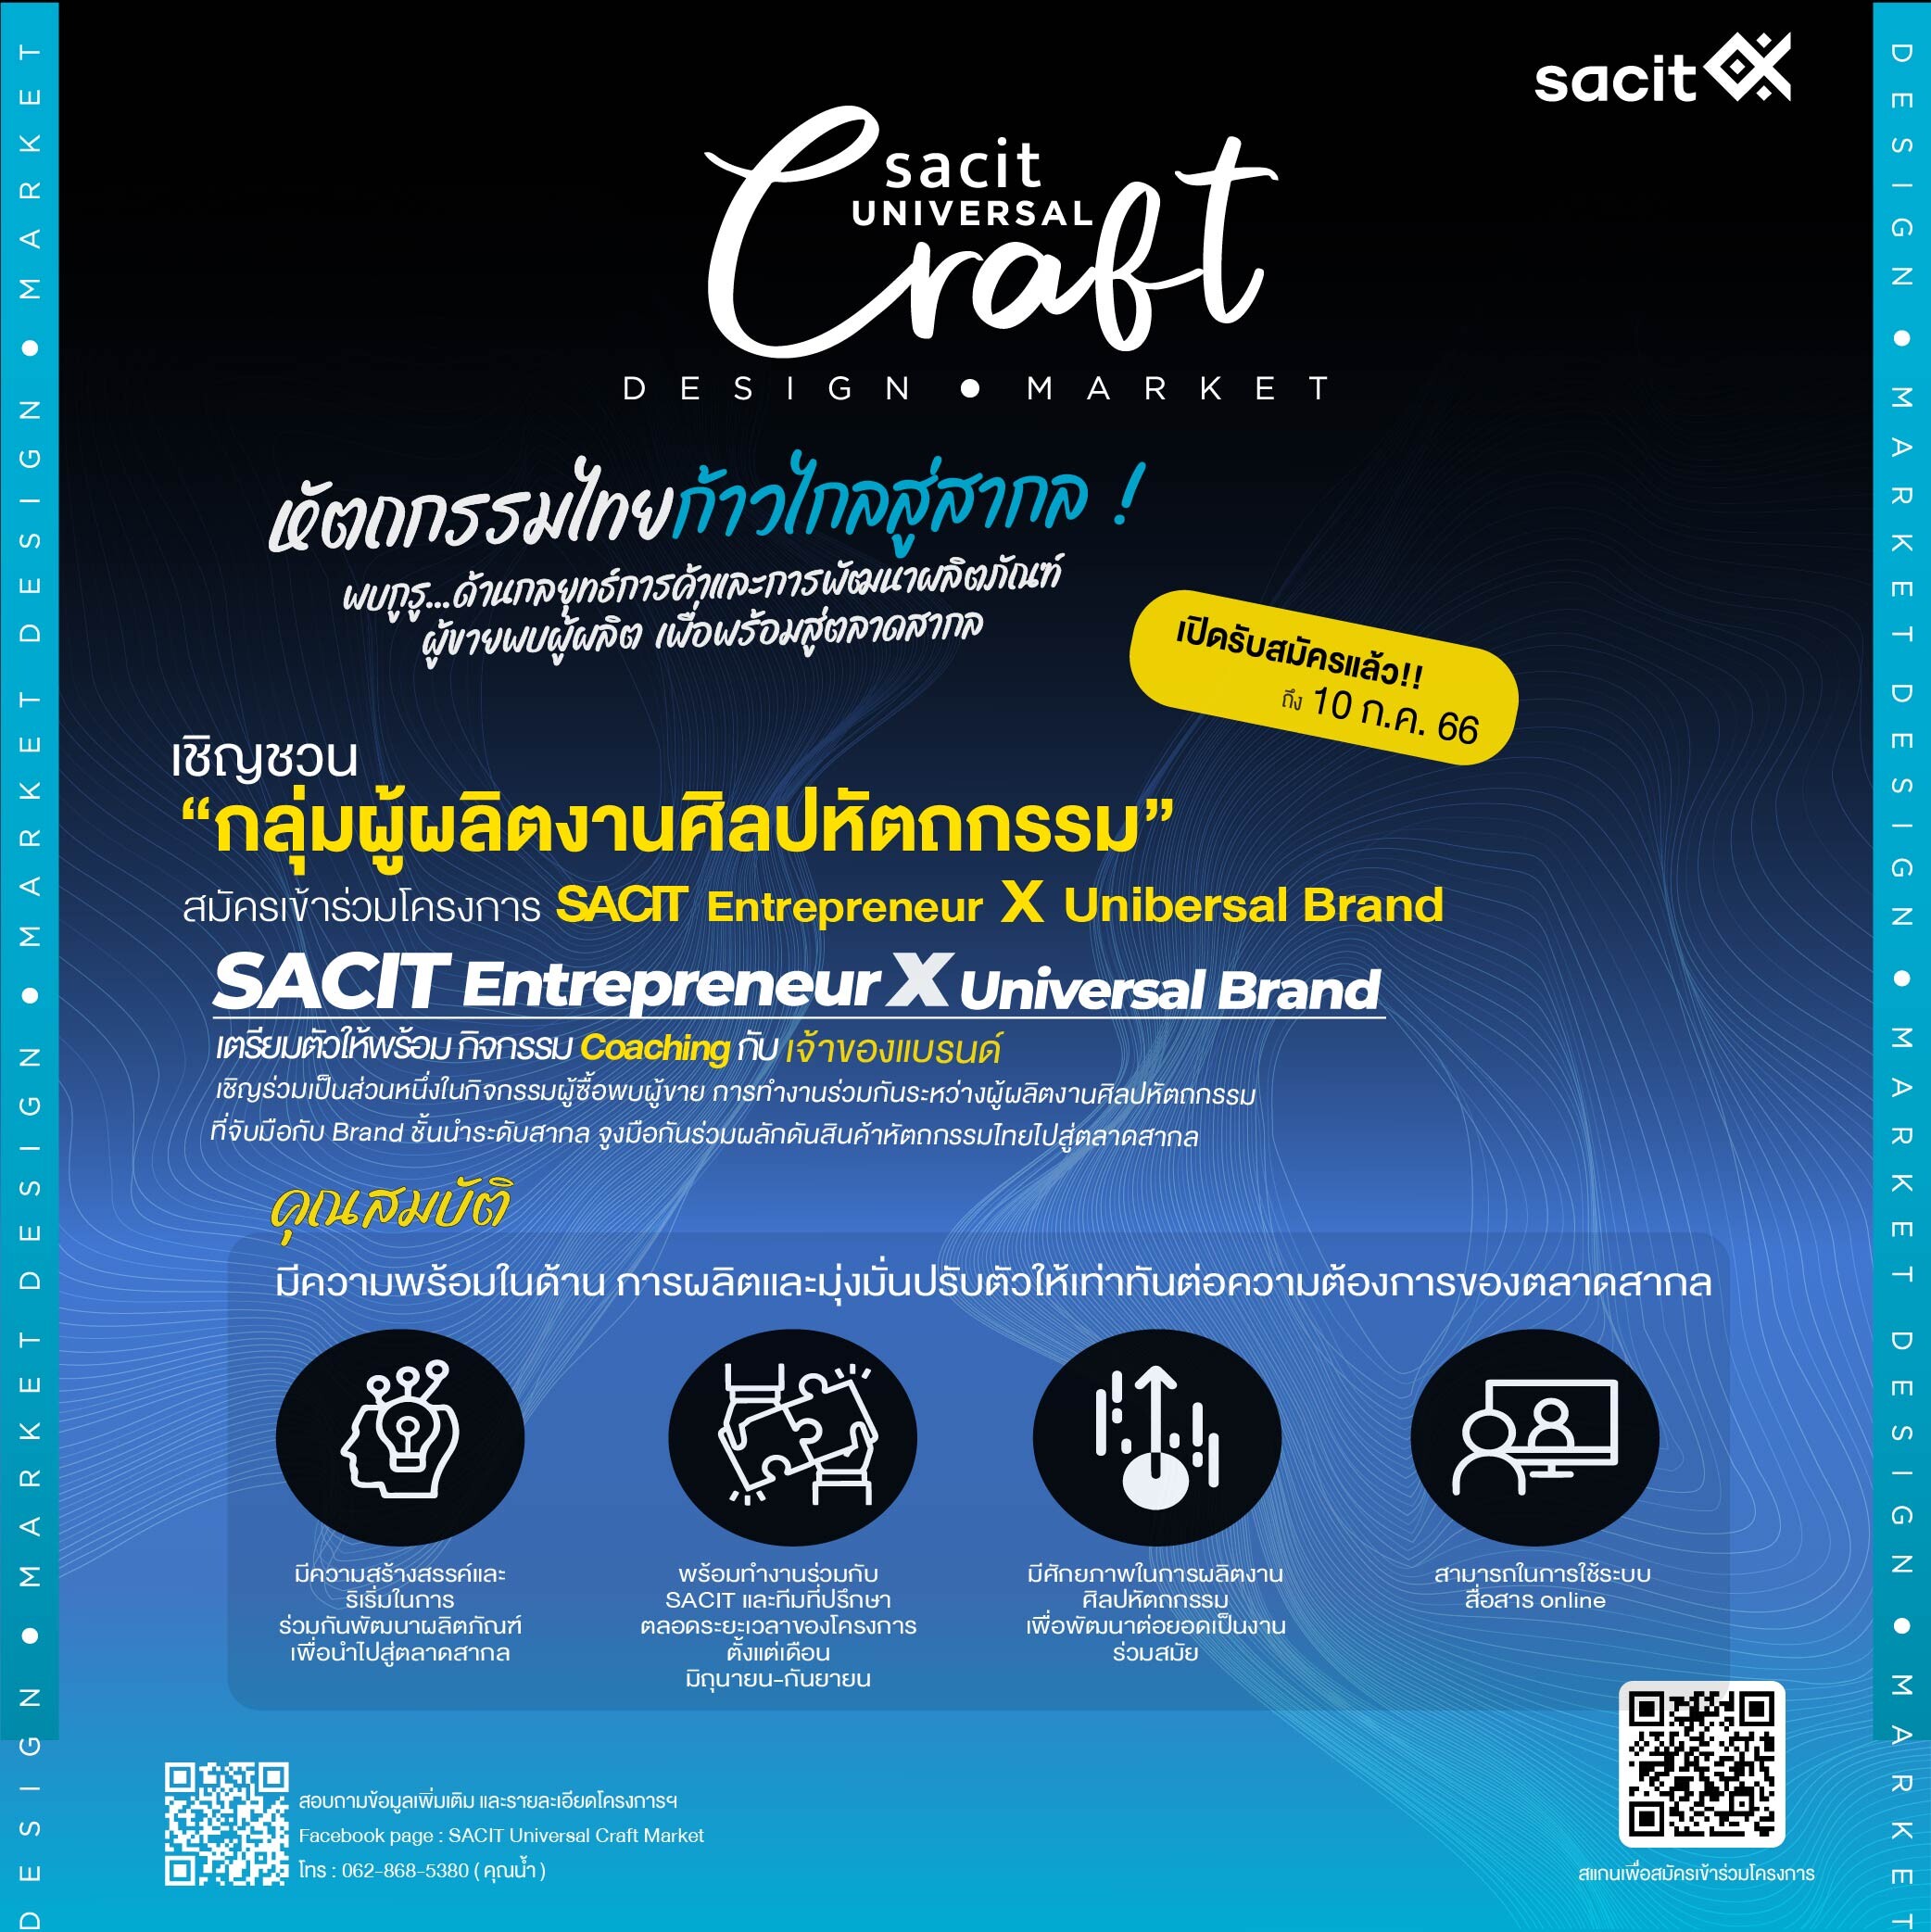 SACIT Universal Craft Market เชิญชวนผู้ผลิตงานศิลปหัตถกรรมเข้าเป็นส่วนหนึ่งในโครงการพัฒนารูปแบบผลิตภัณฑ์เพื่อตลาดสากล